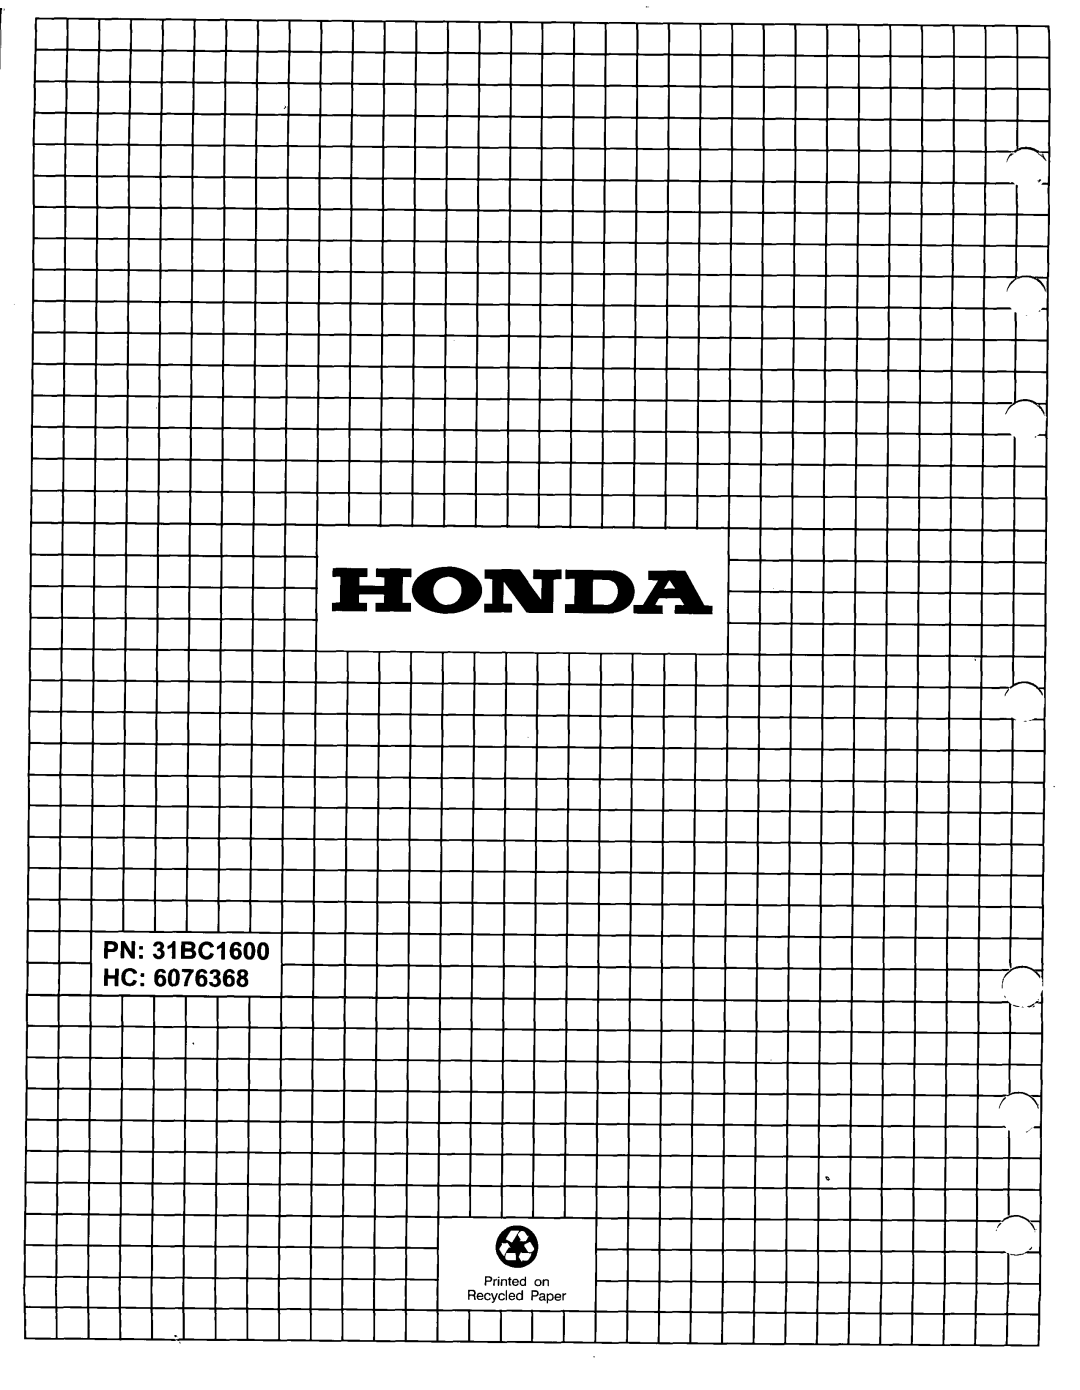 Honda Power Equipment BC100 manual PN 31 BC1600 HC, IIlII.Il”‘I”““““‘IIIII’IIII’ 